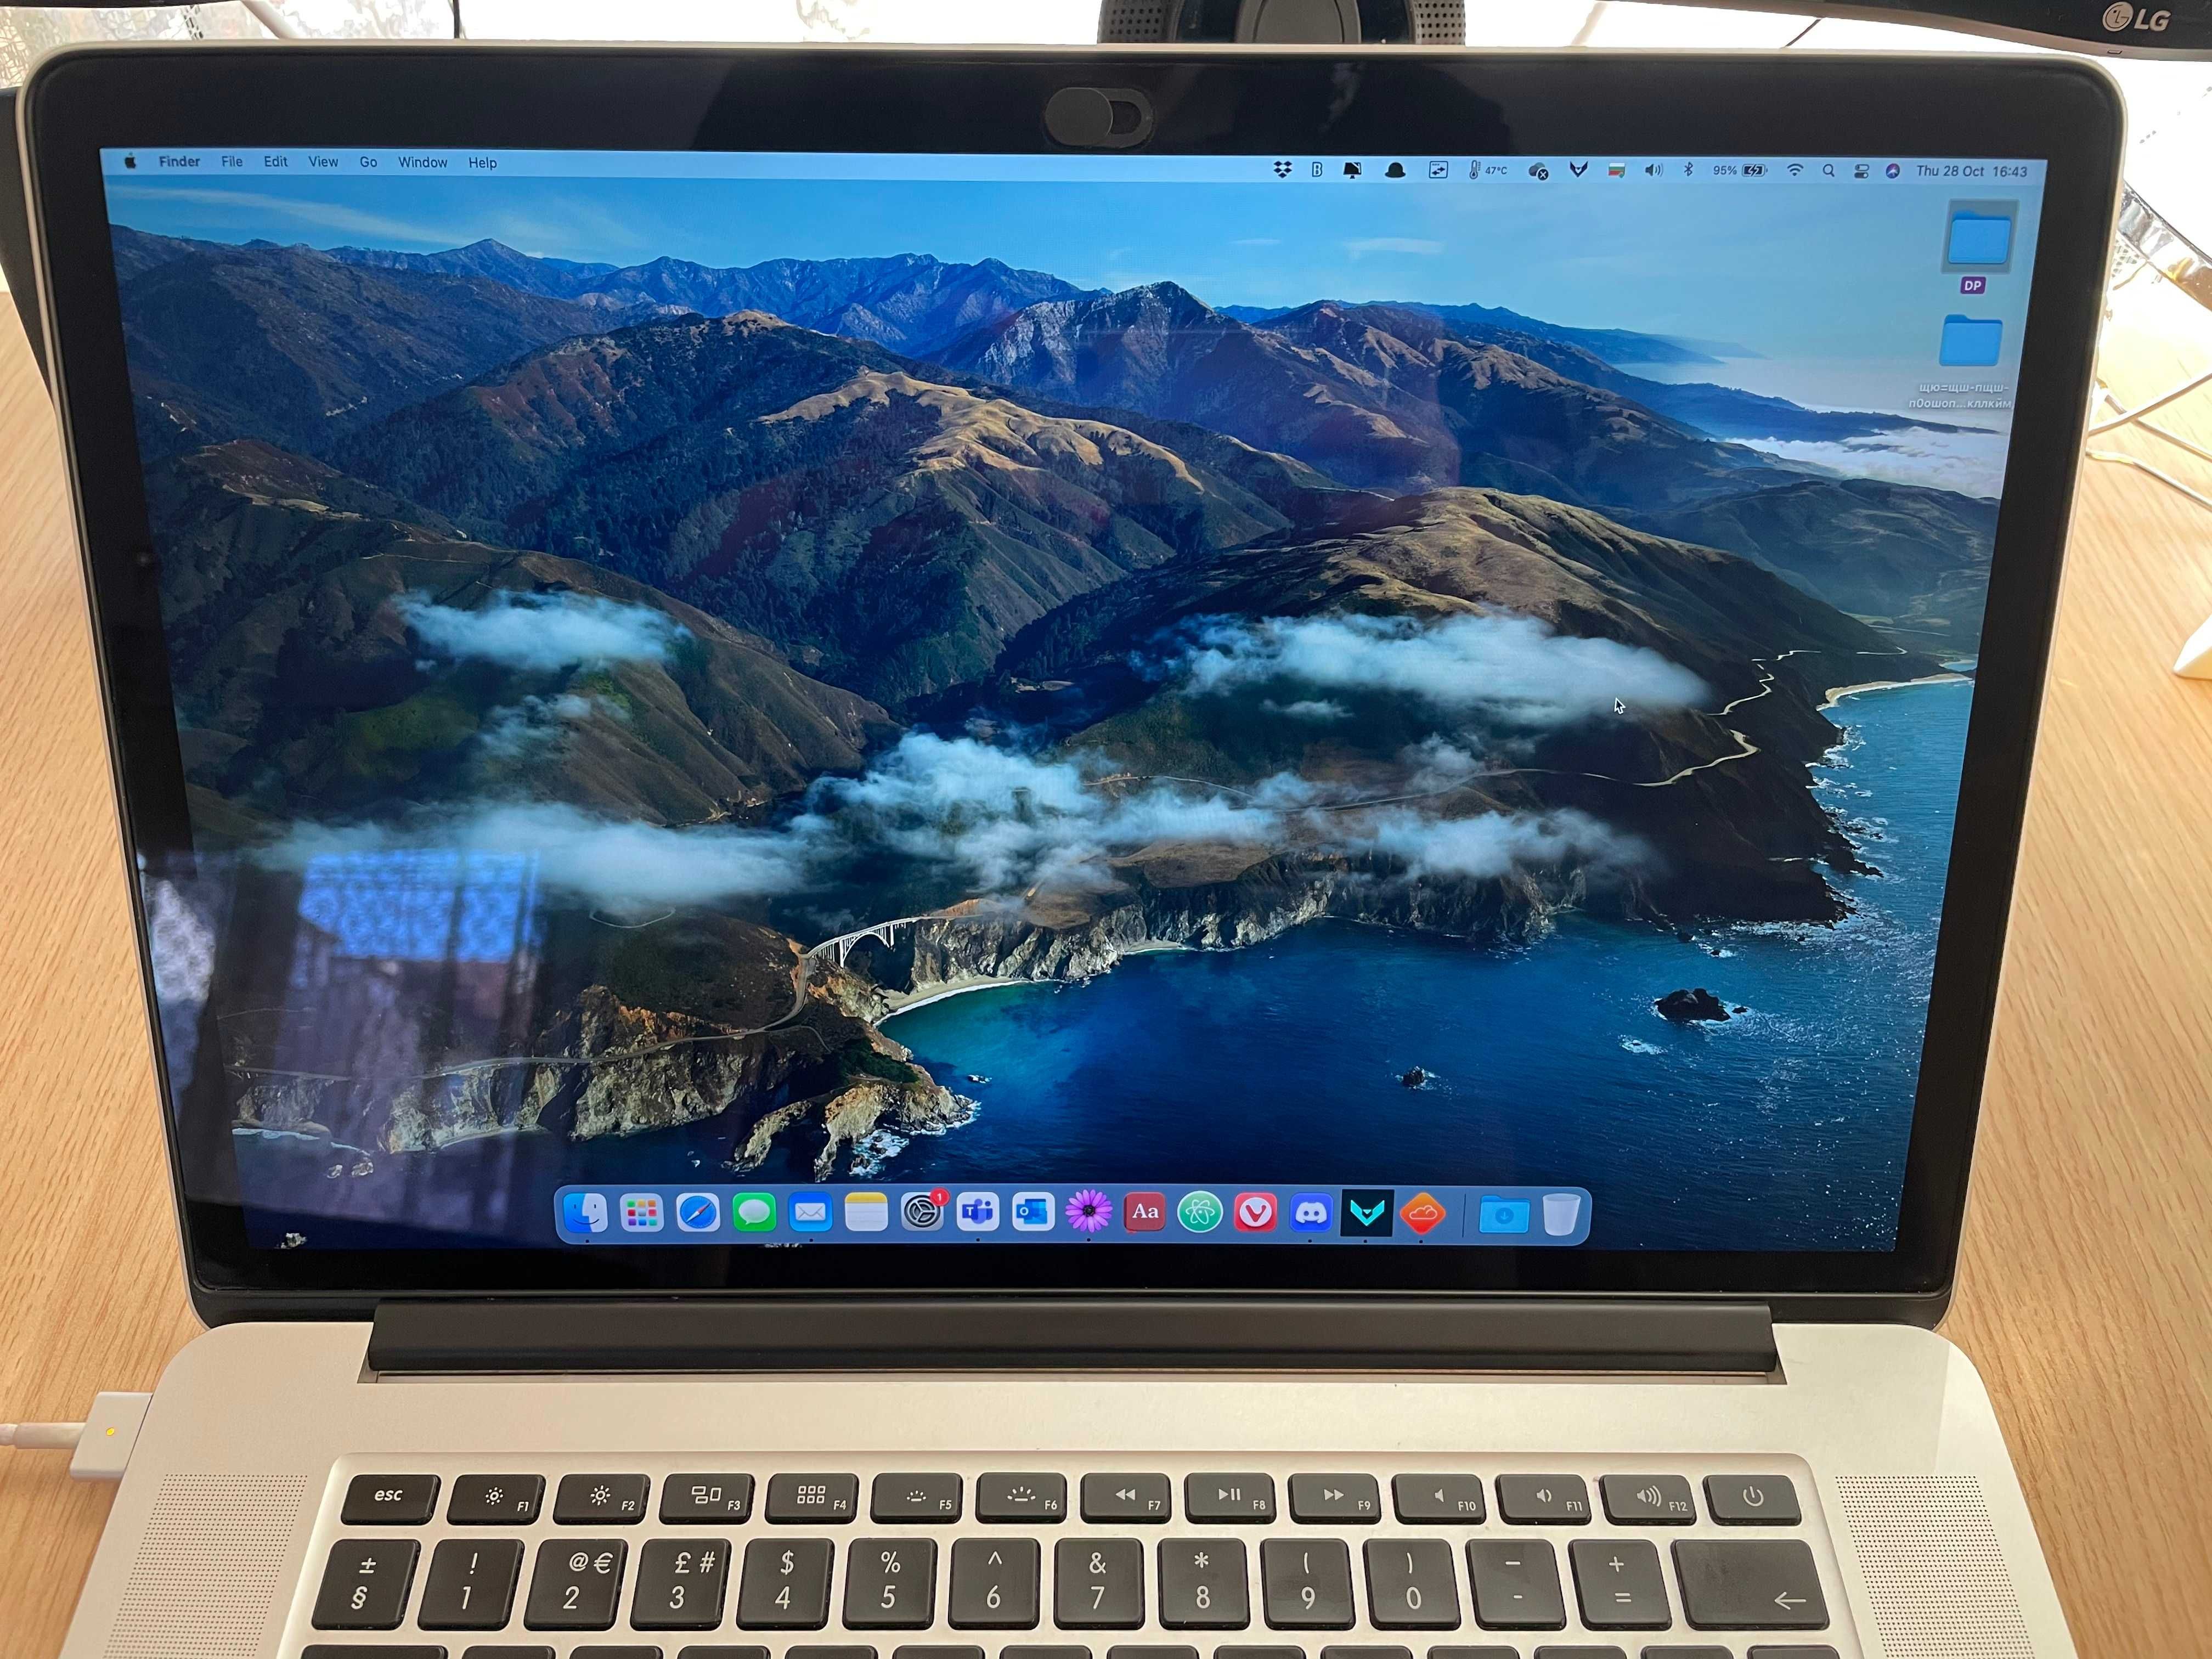 MacBook Pro 15", 2.2GHz Quad-Core, 250GB SSD, i7, 16 RAM, Mid 2015